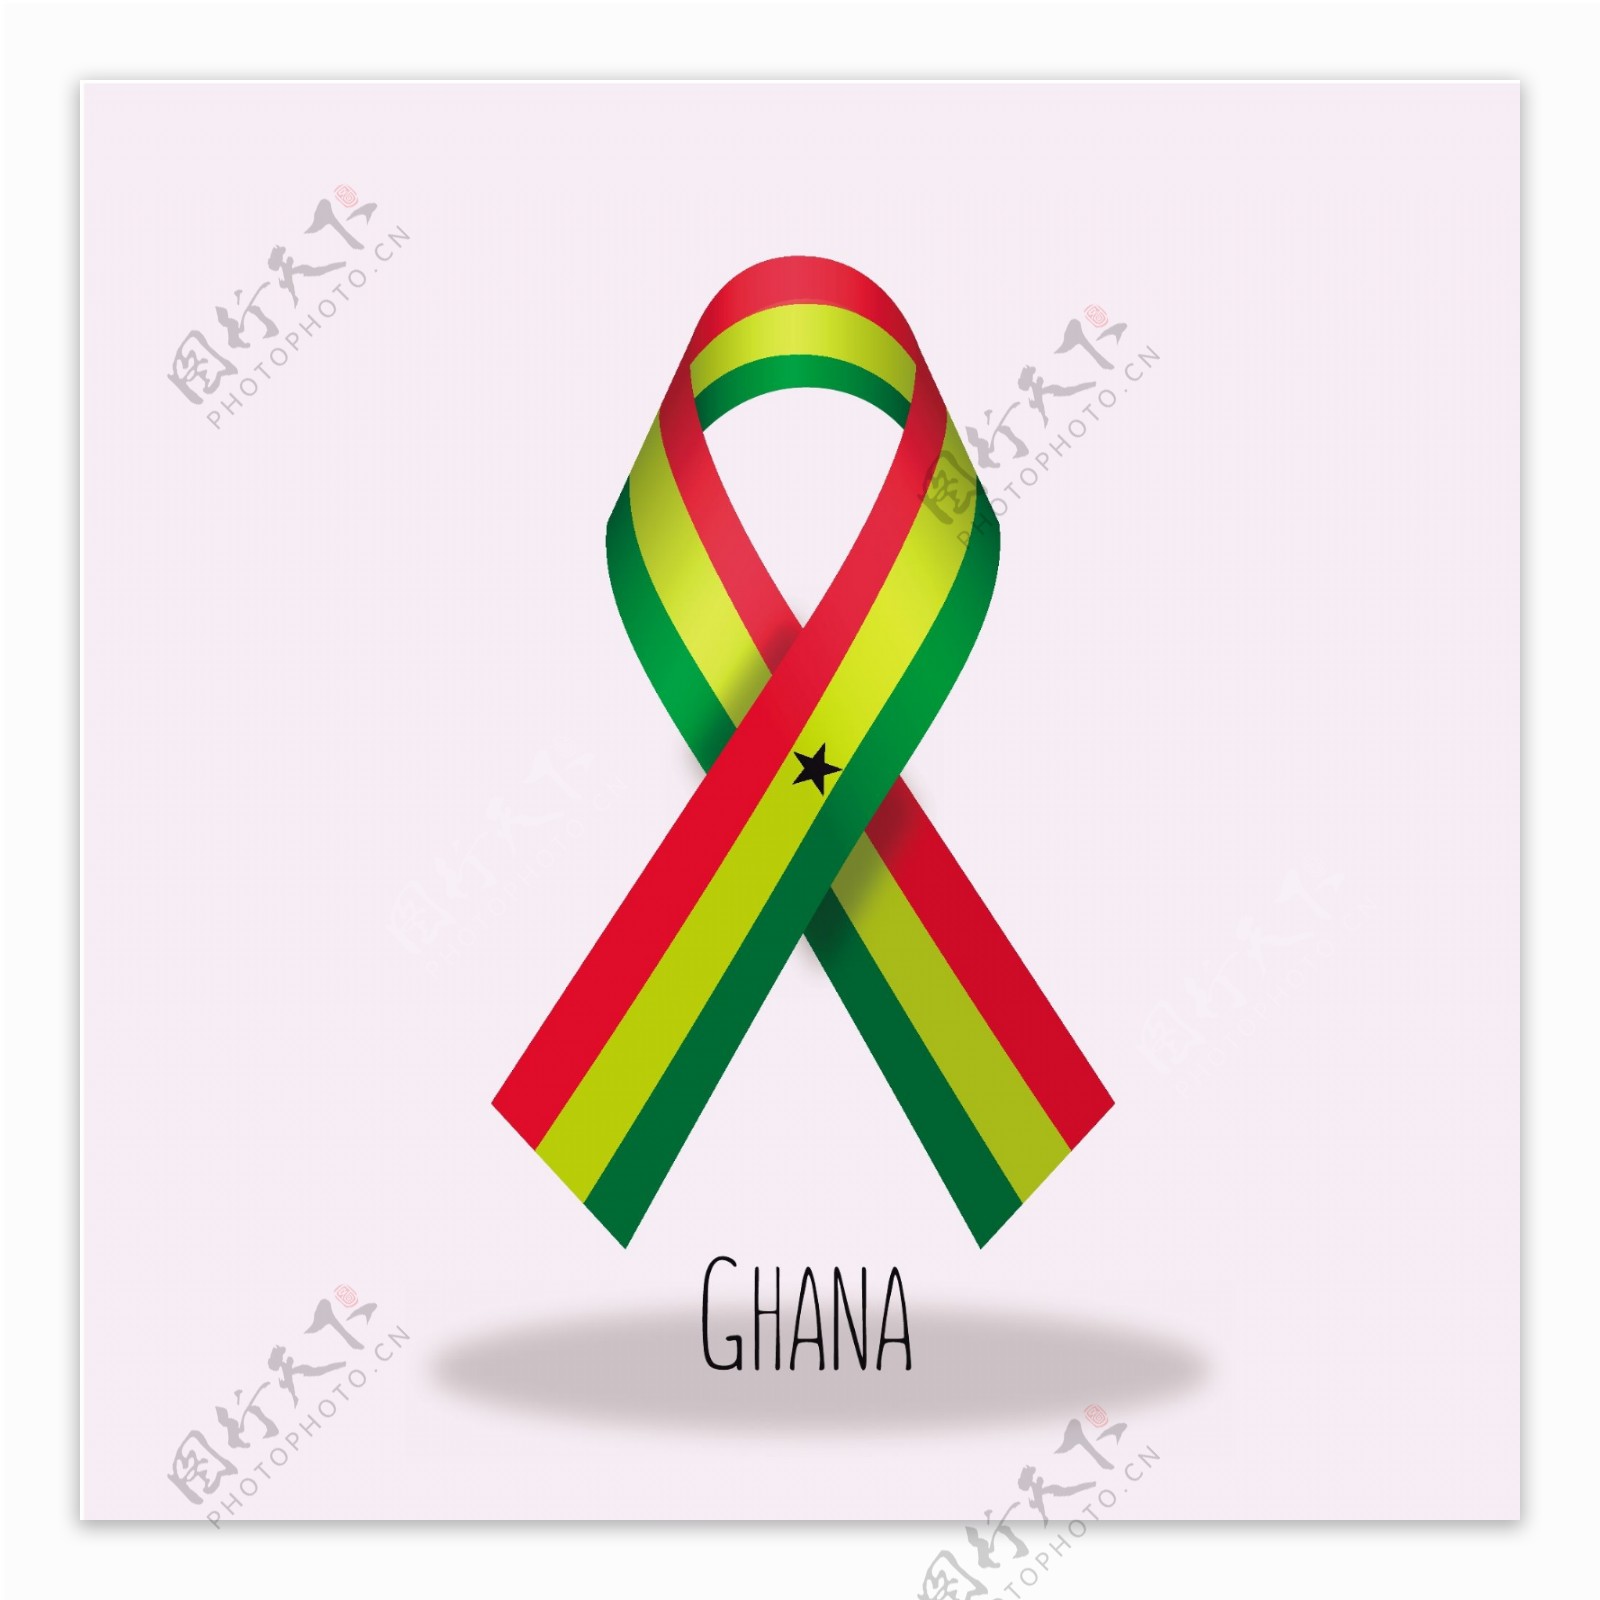 加纳国旗丝带设计矢量素材